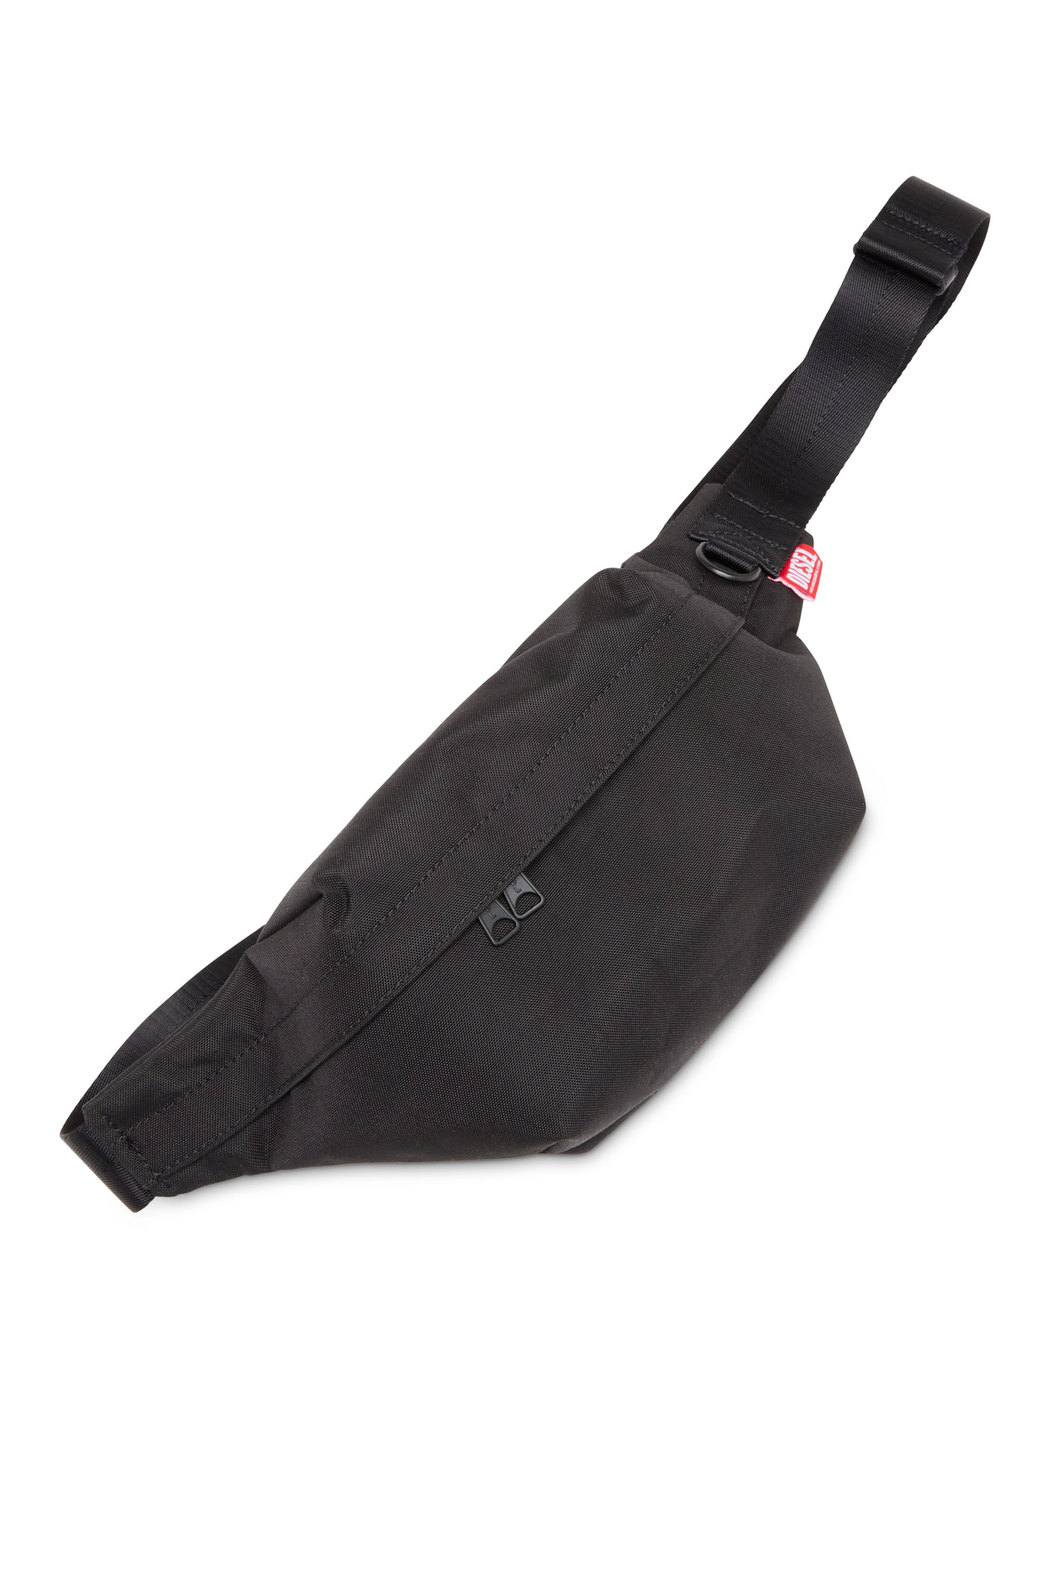 D-Bsc Beltbag X - Belt bag in heavy-duty shell